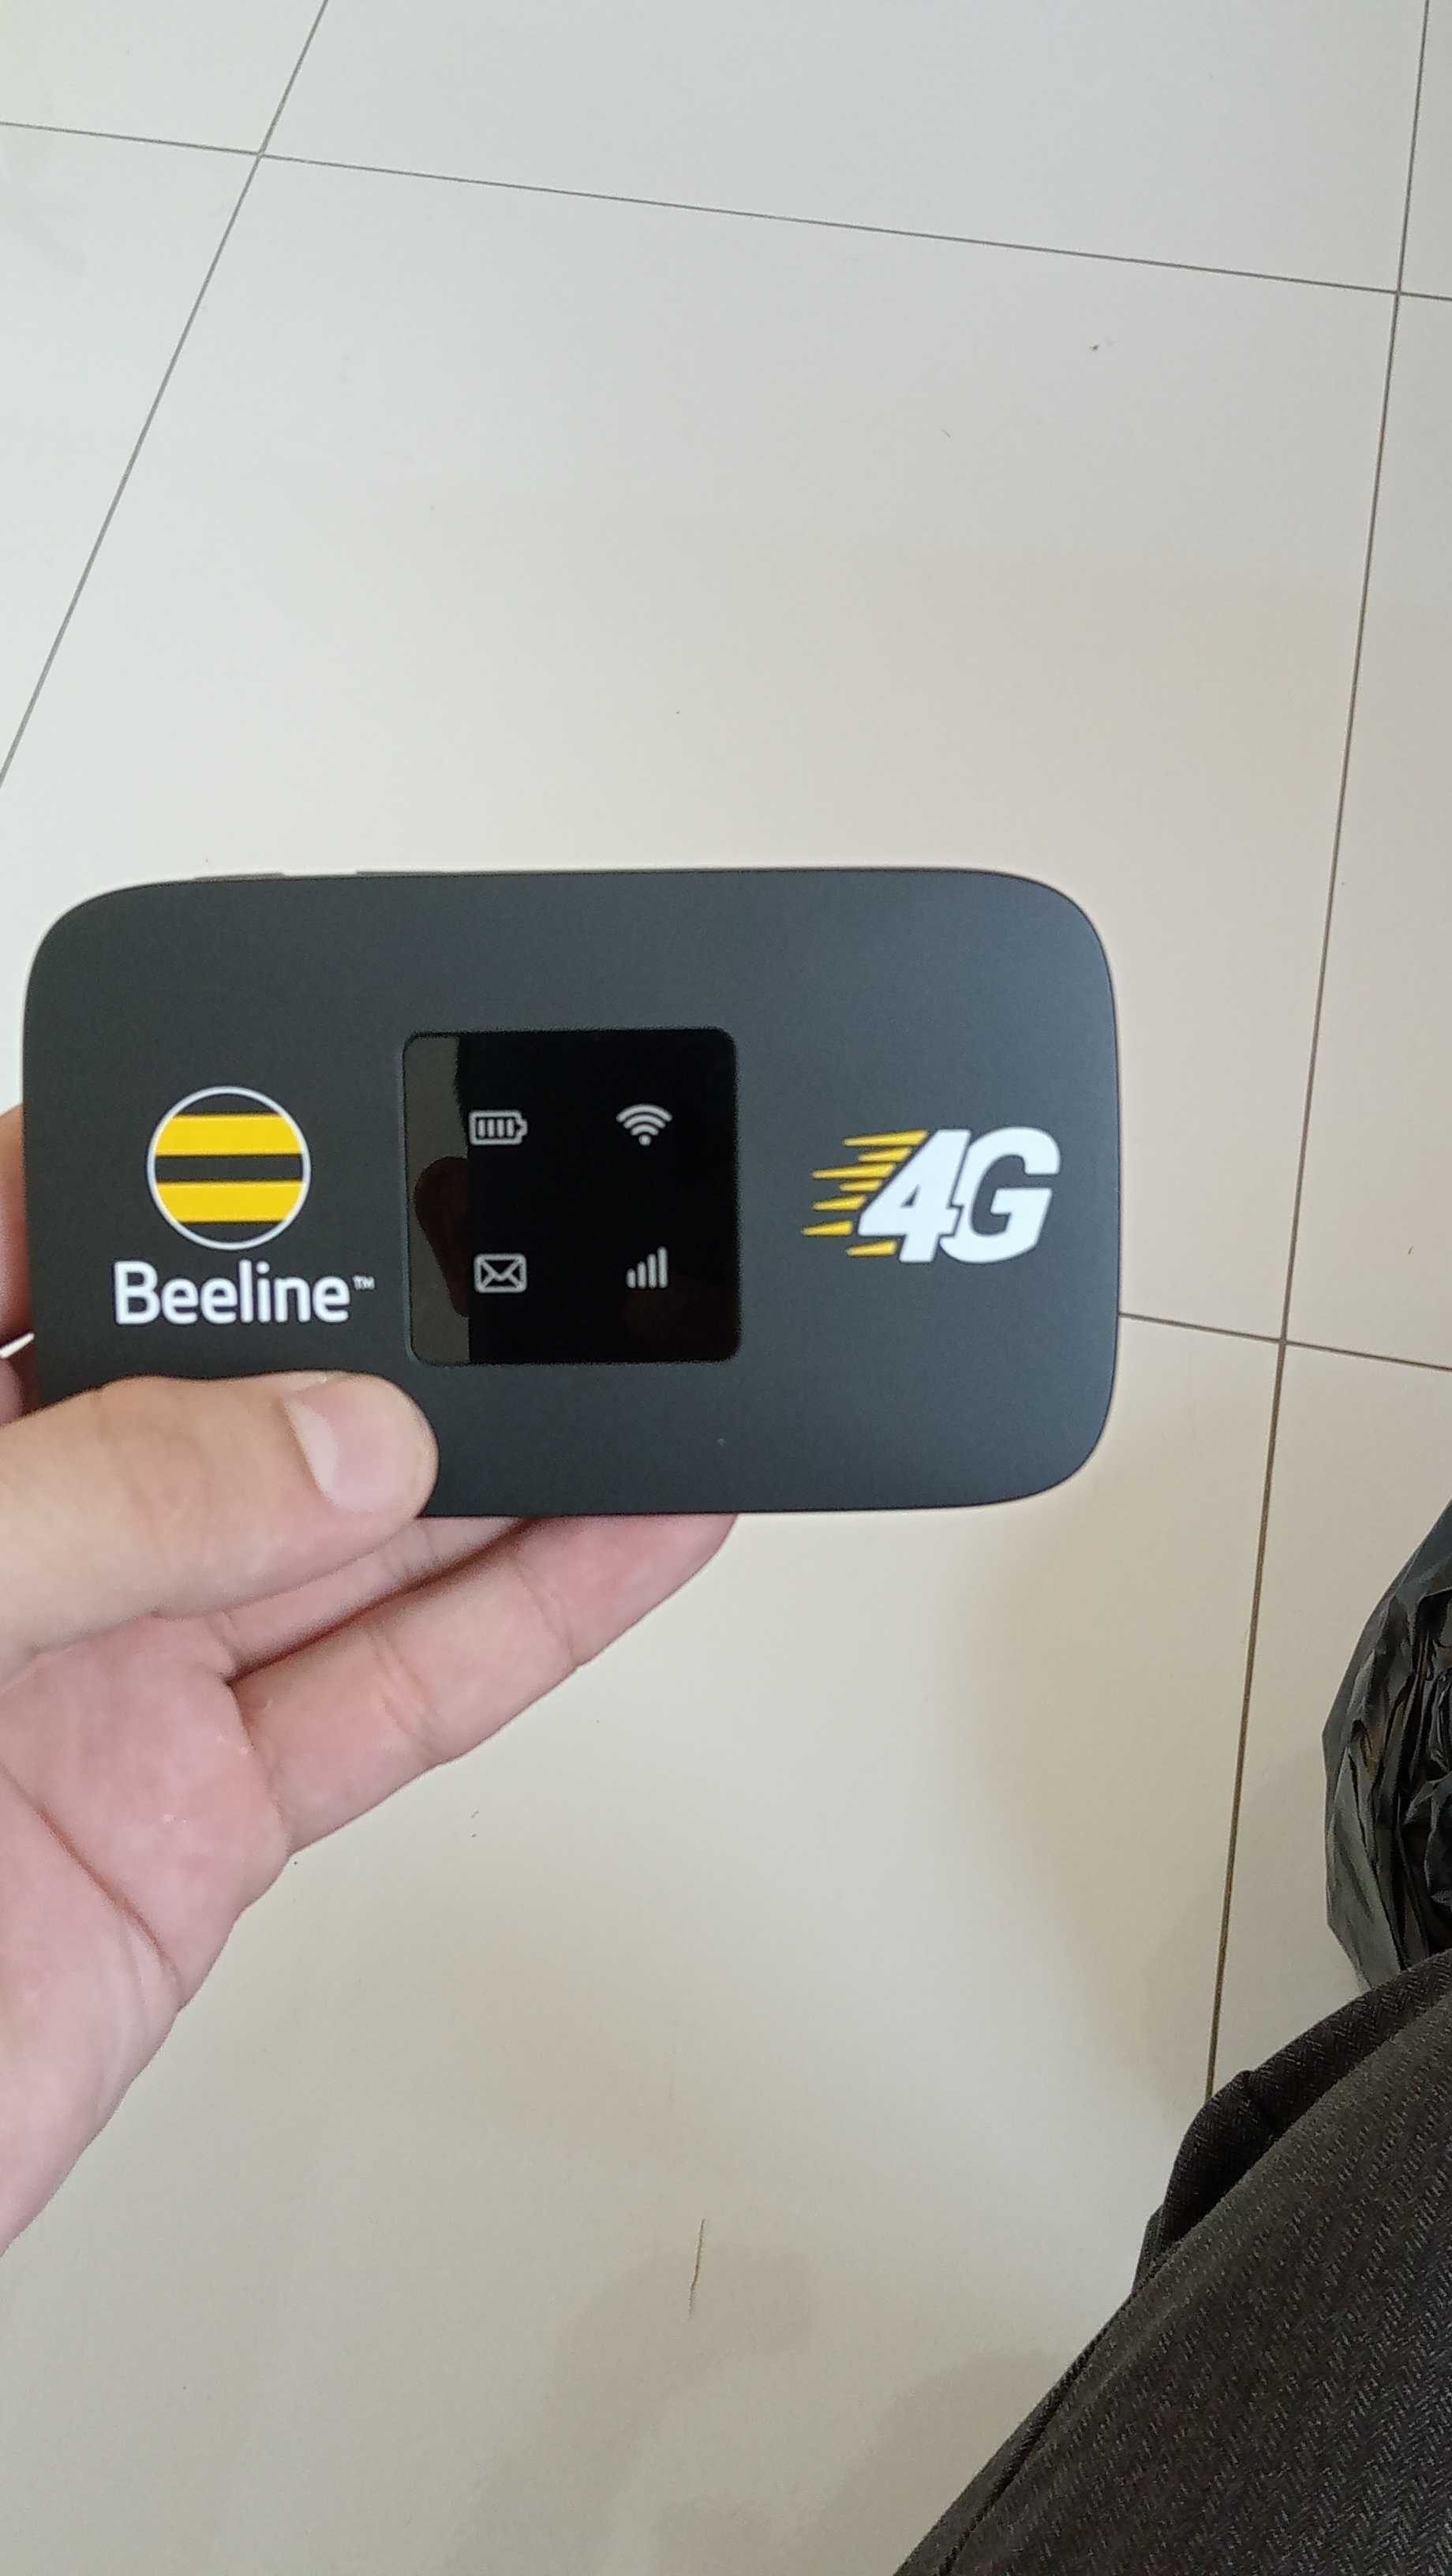 Wi-Fi-роутер для доступа в интернет. + льготный тариф от Beeline.